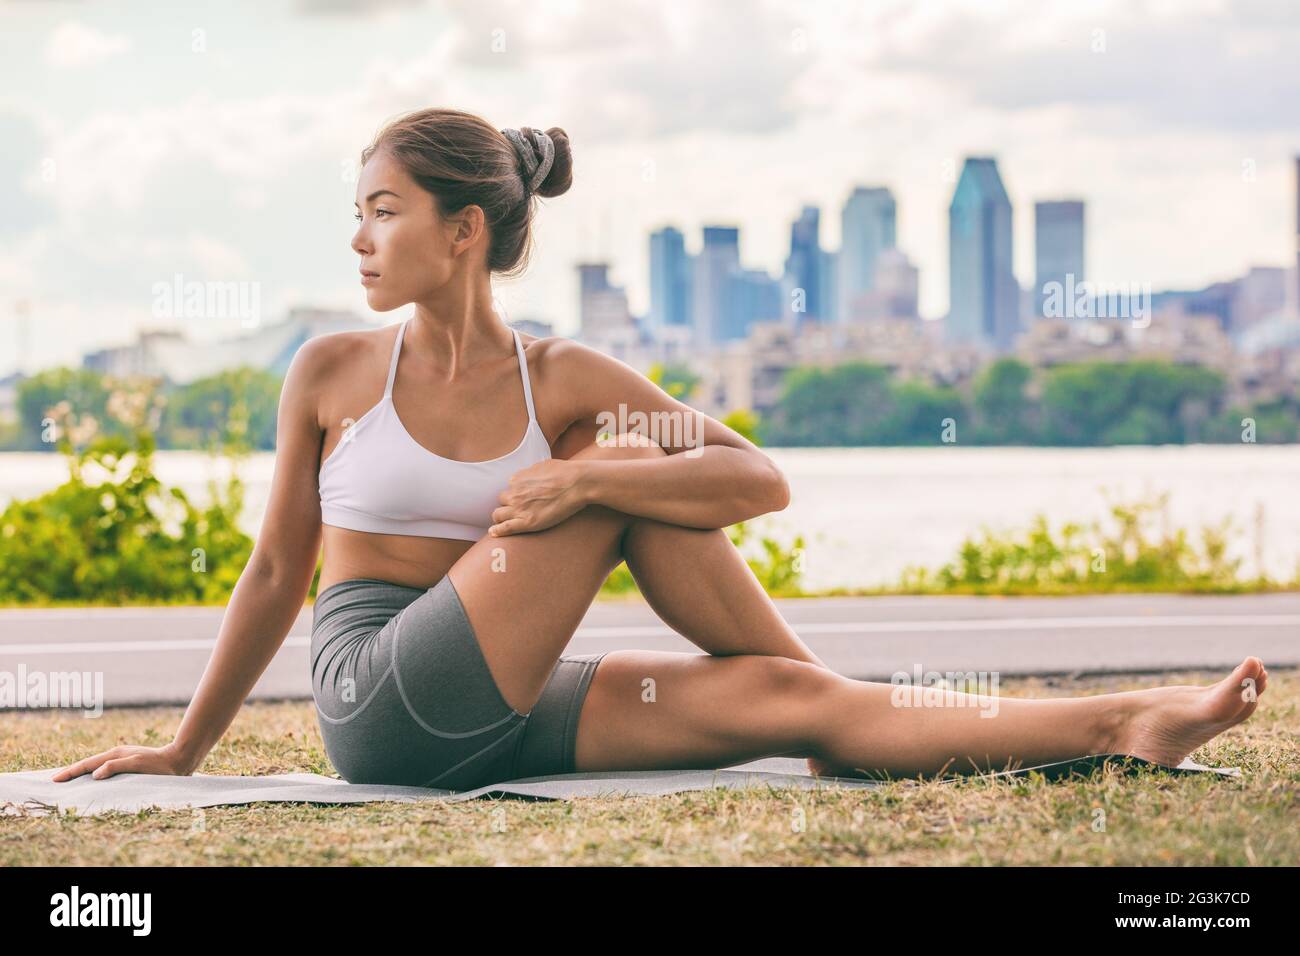 Yoga-Stretch-Übung fit Asiatische Frau Stretching unteren Rücken für die Gesundheit der Wirbelsäule auf Stadt Outdoor-Fitness-Klasse im Park. Sitzende Wirbelsäulenverdrehung Stockfoto